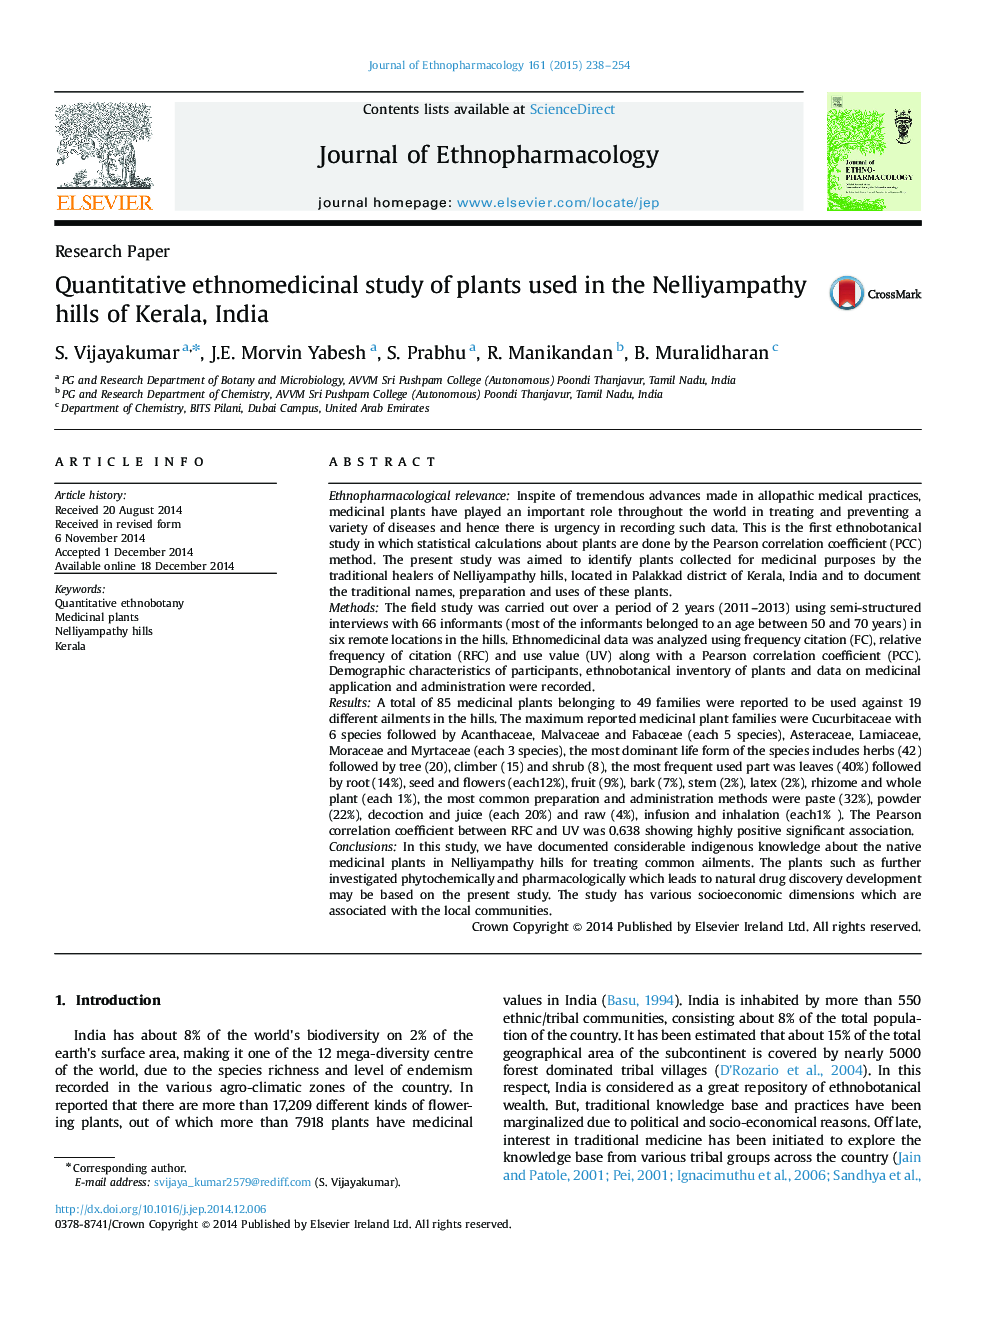 مقاله پژوهشی مطالعات جمعیت شناختی گیاهان مورد استفاده در تپه های نلییپمپتی کرالا، هند 